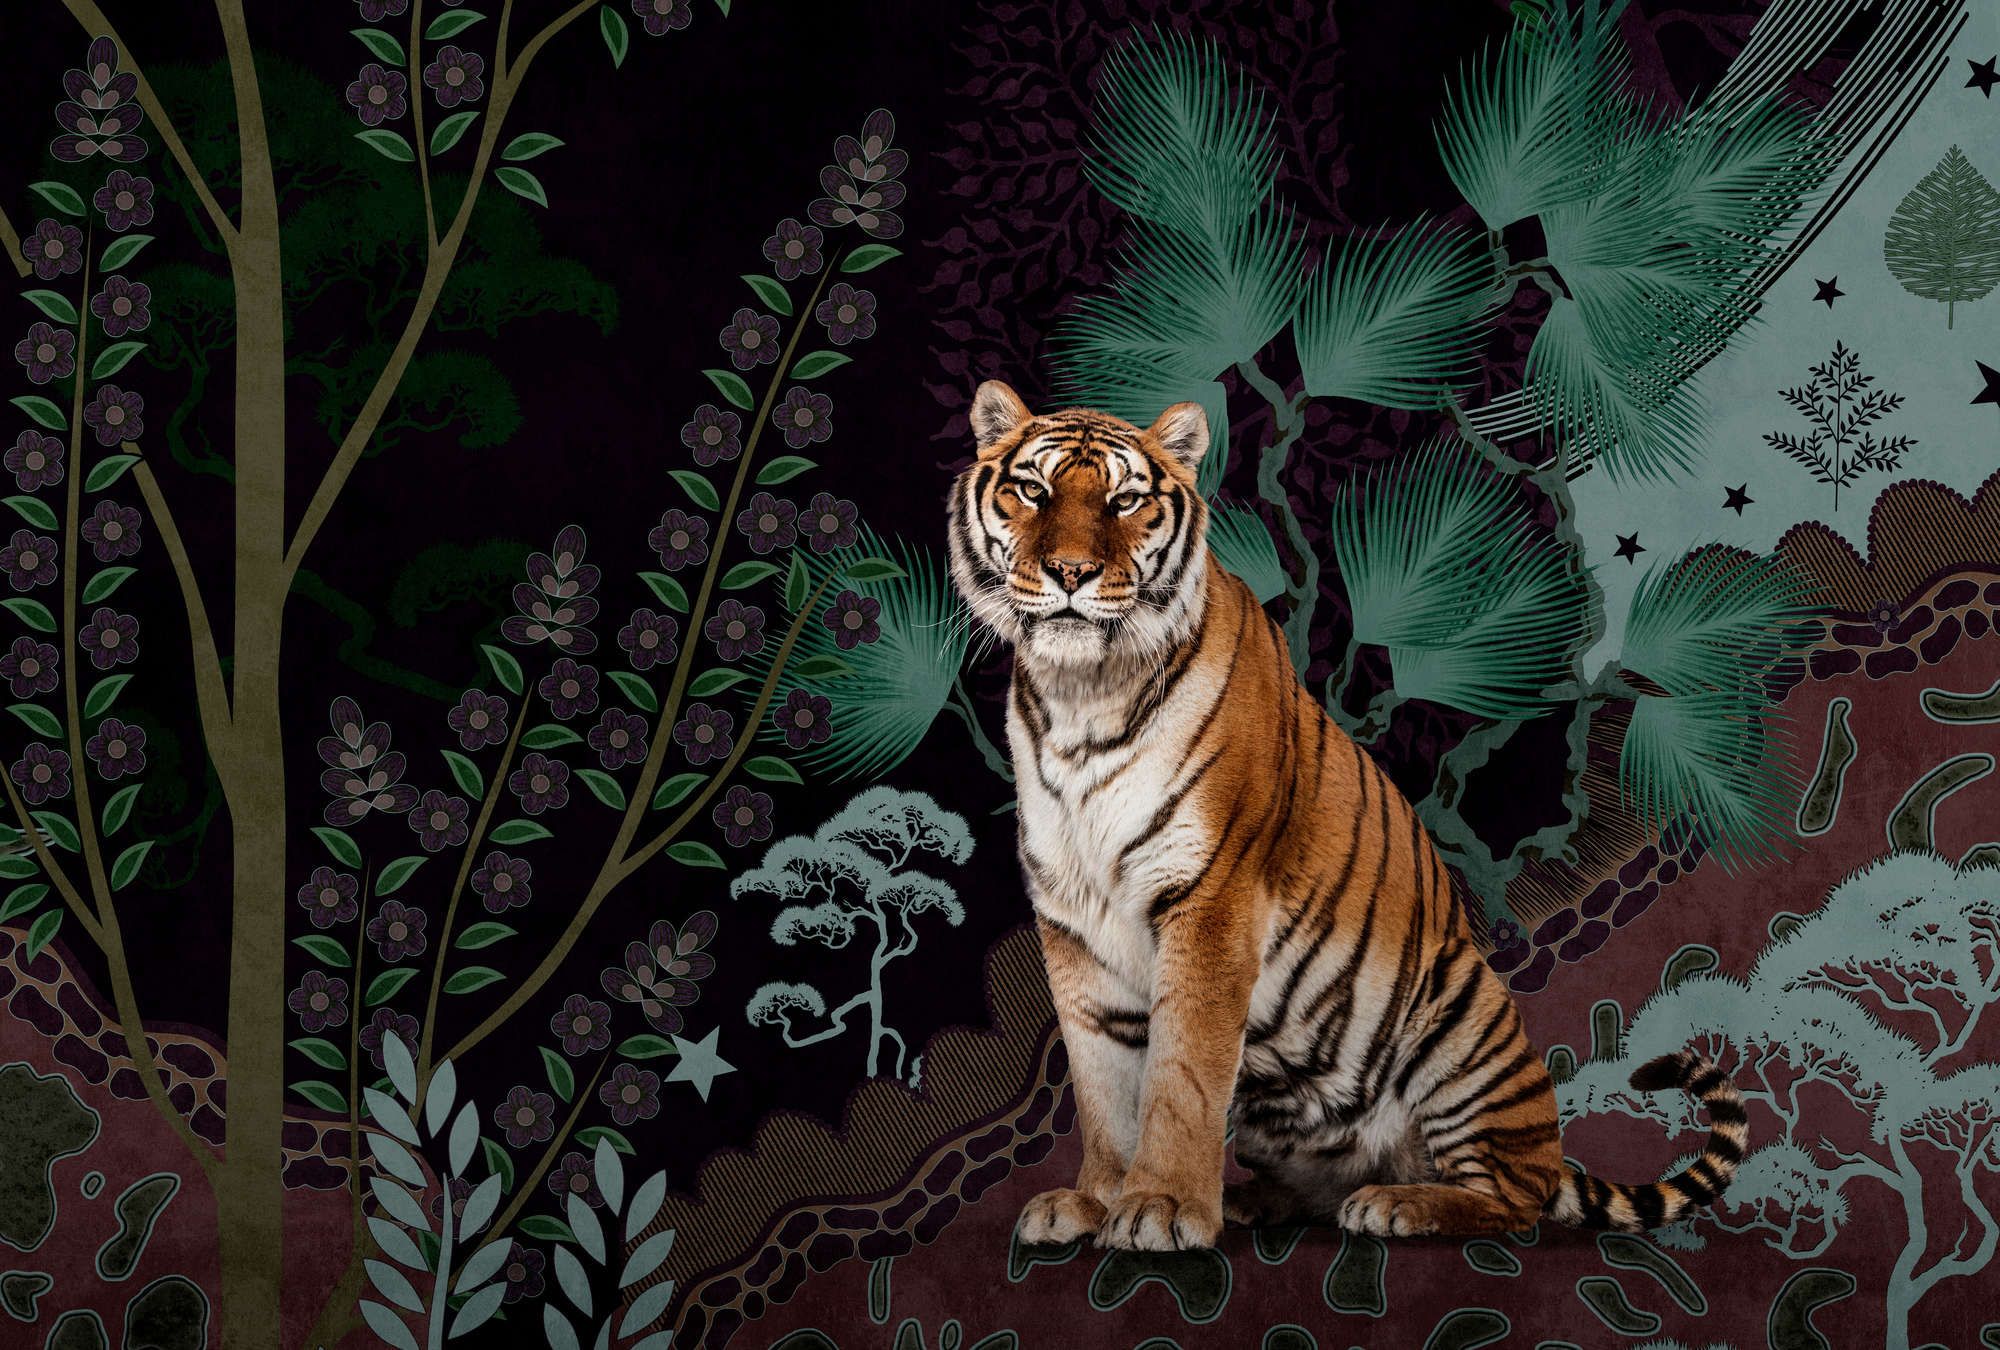             Fotomural »khan« - Motivo abstracto de jungla con tigre - Material sin tejer liso, ligeramente nacarado
        